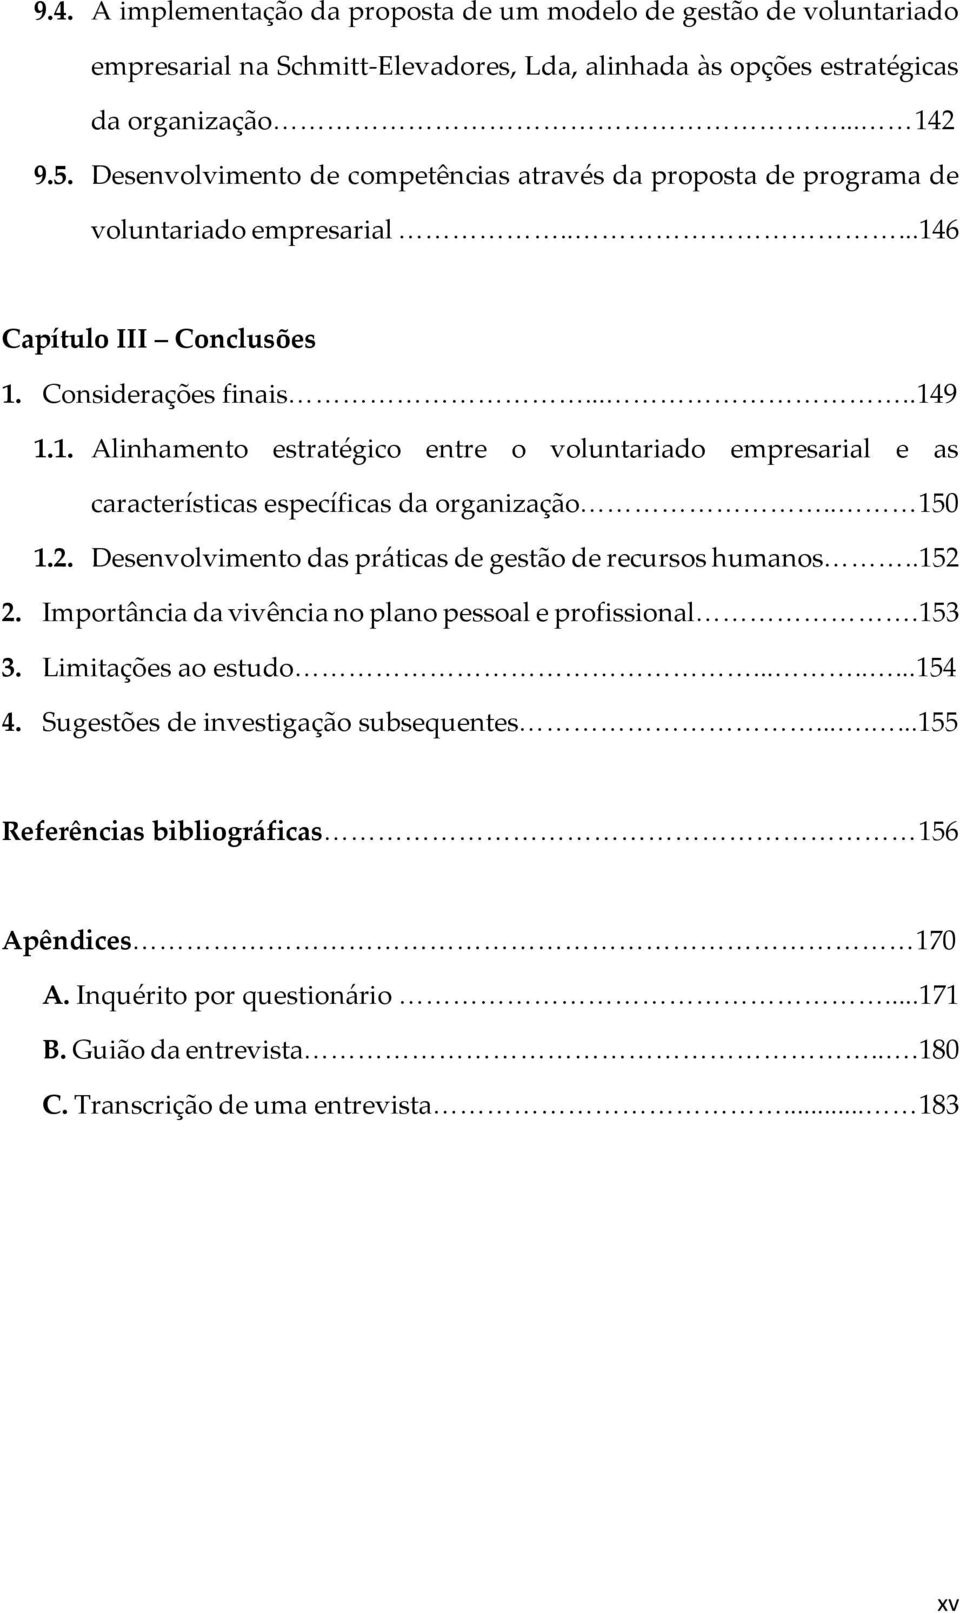 6 Capítulo III Conclusões 1. Considerações finais.....149 1.1. Alinhamento estratégico entre o voluntariado empresarial e as características específicas da organização.. 150 1.2.